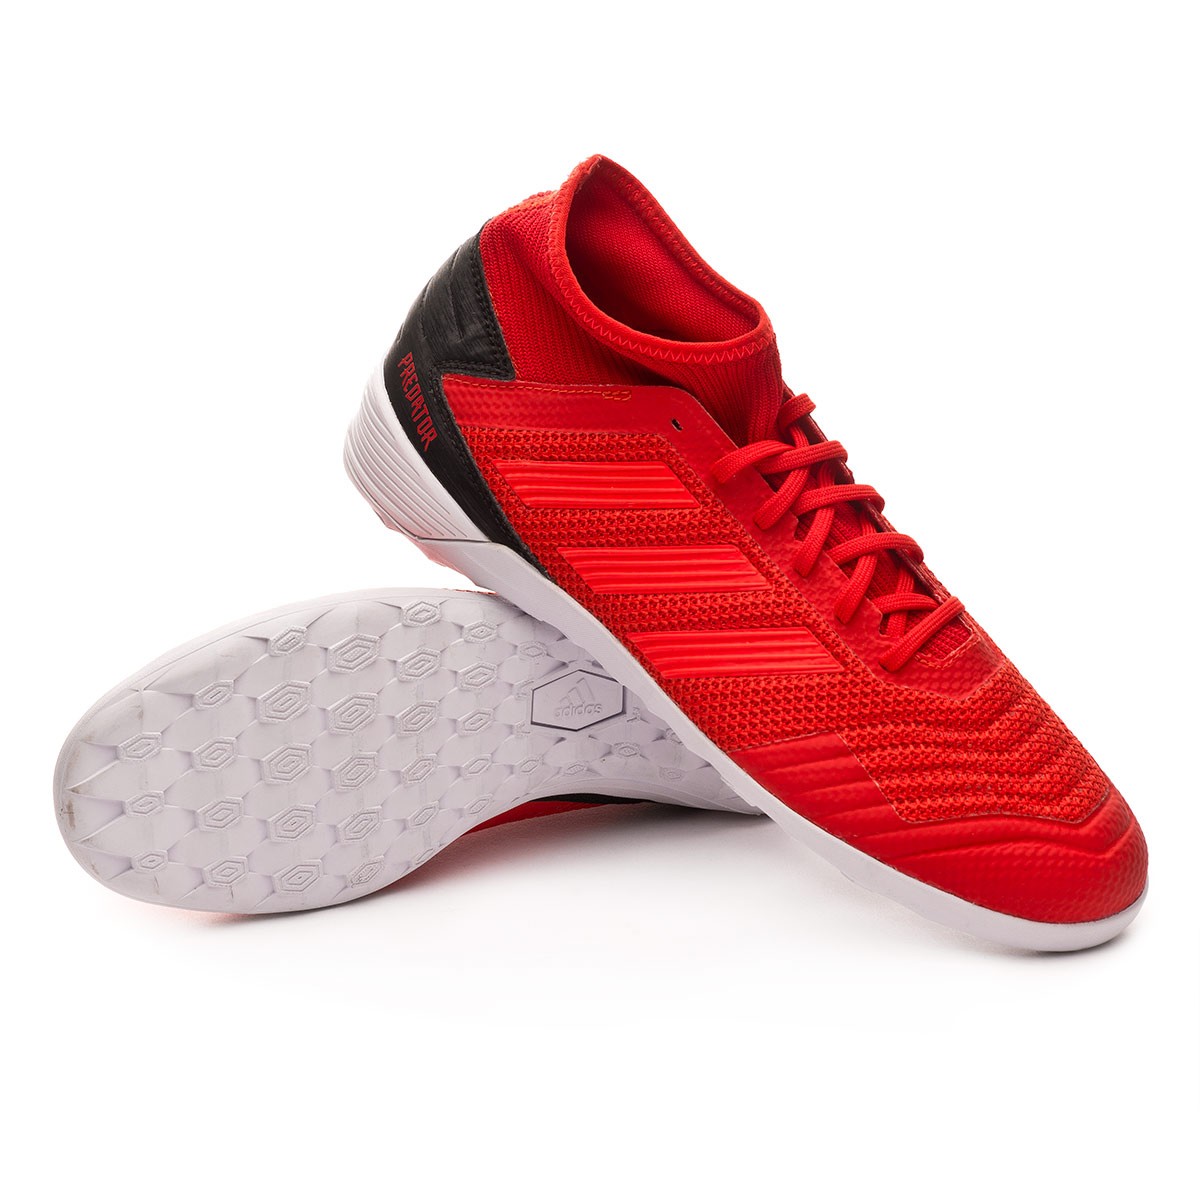 adidas predator 19.3 futsal shoes